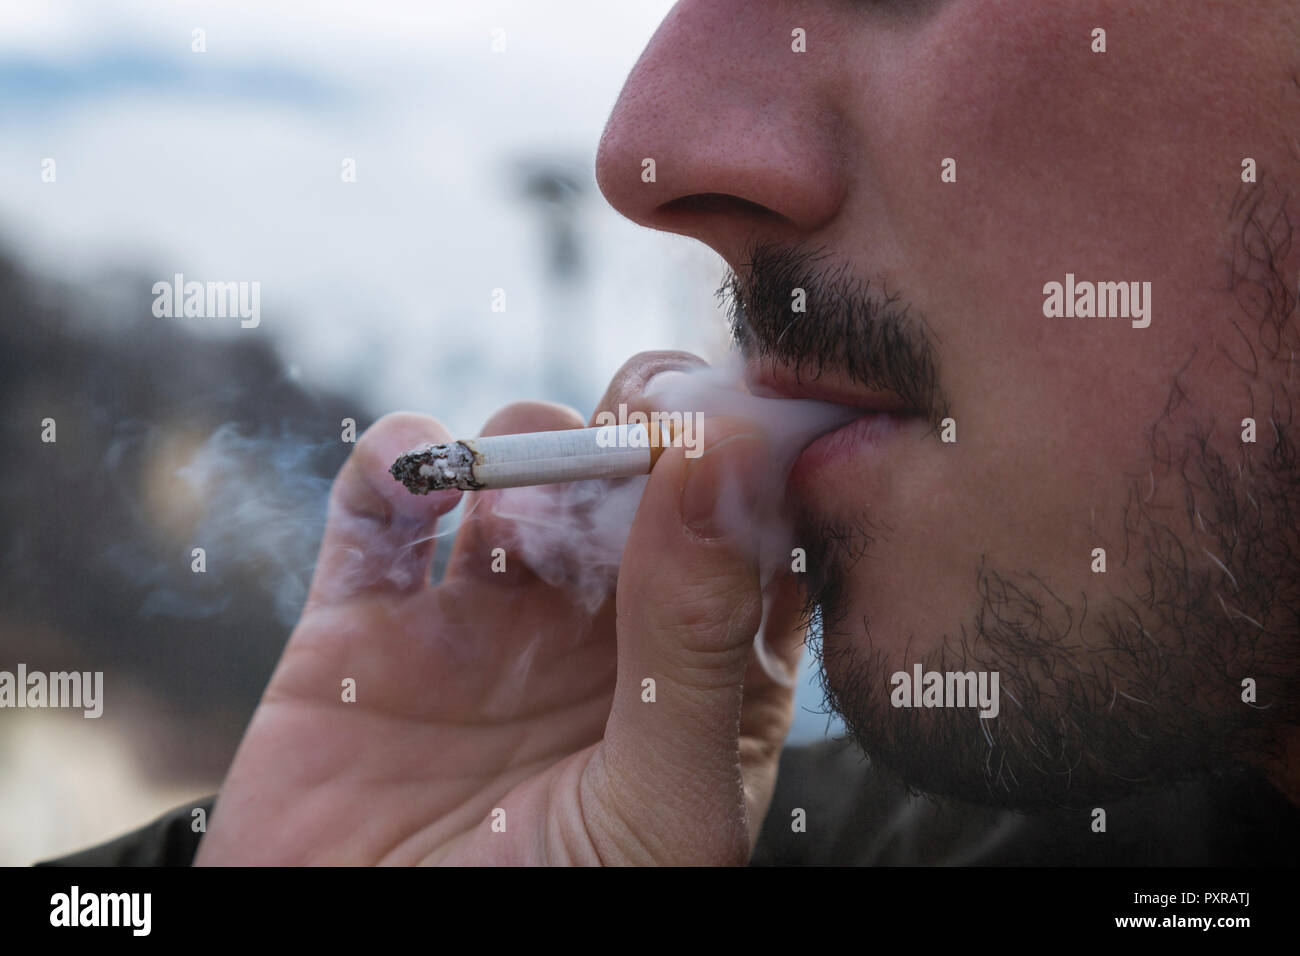 Detalle del fumador, y el humo de cigarrillo Foto de stock